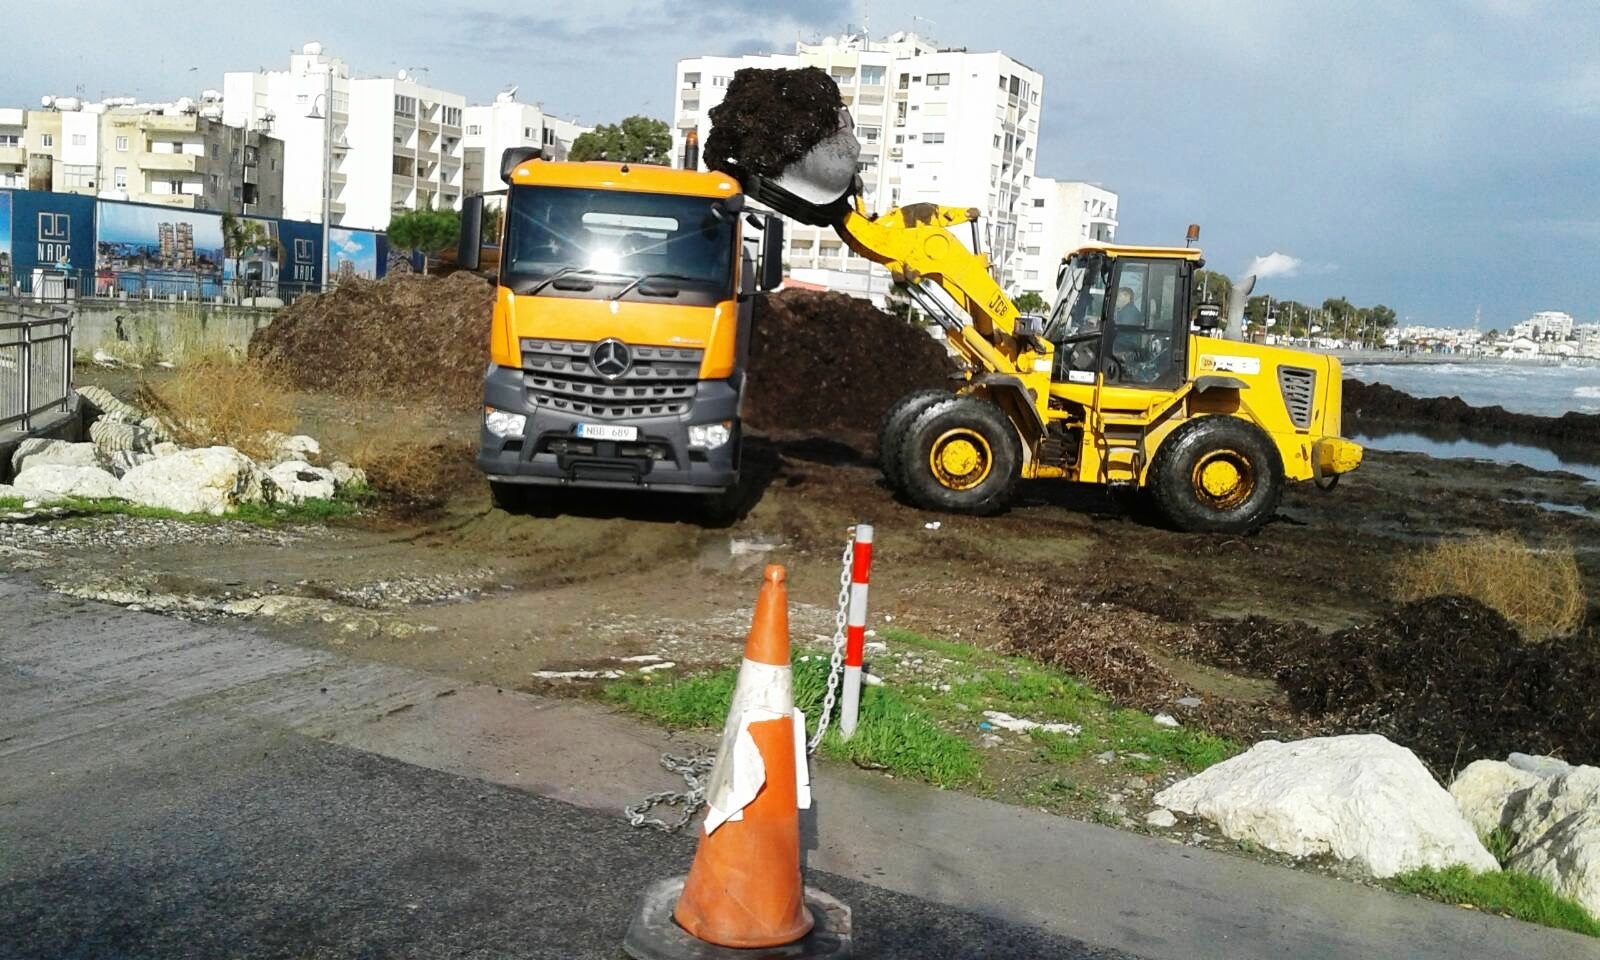 Το Τμήμα Καθαριότητας του Δήμου Λάρνακας συνεχίζει τις εργασίες καθαρισμού εντός της πόλης και της απομάκρυνσης των φυκιών από τις παραλίες